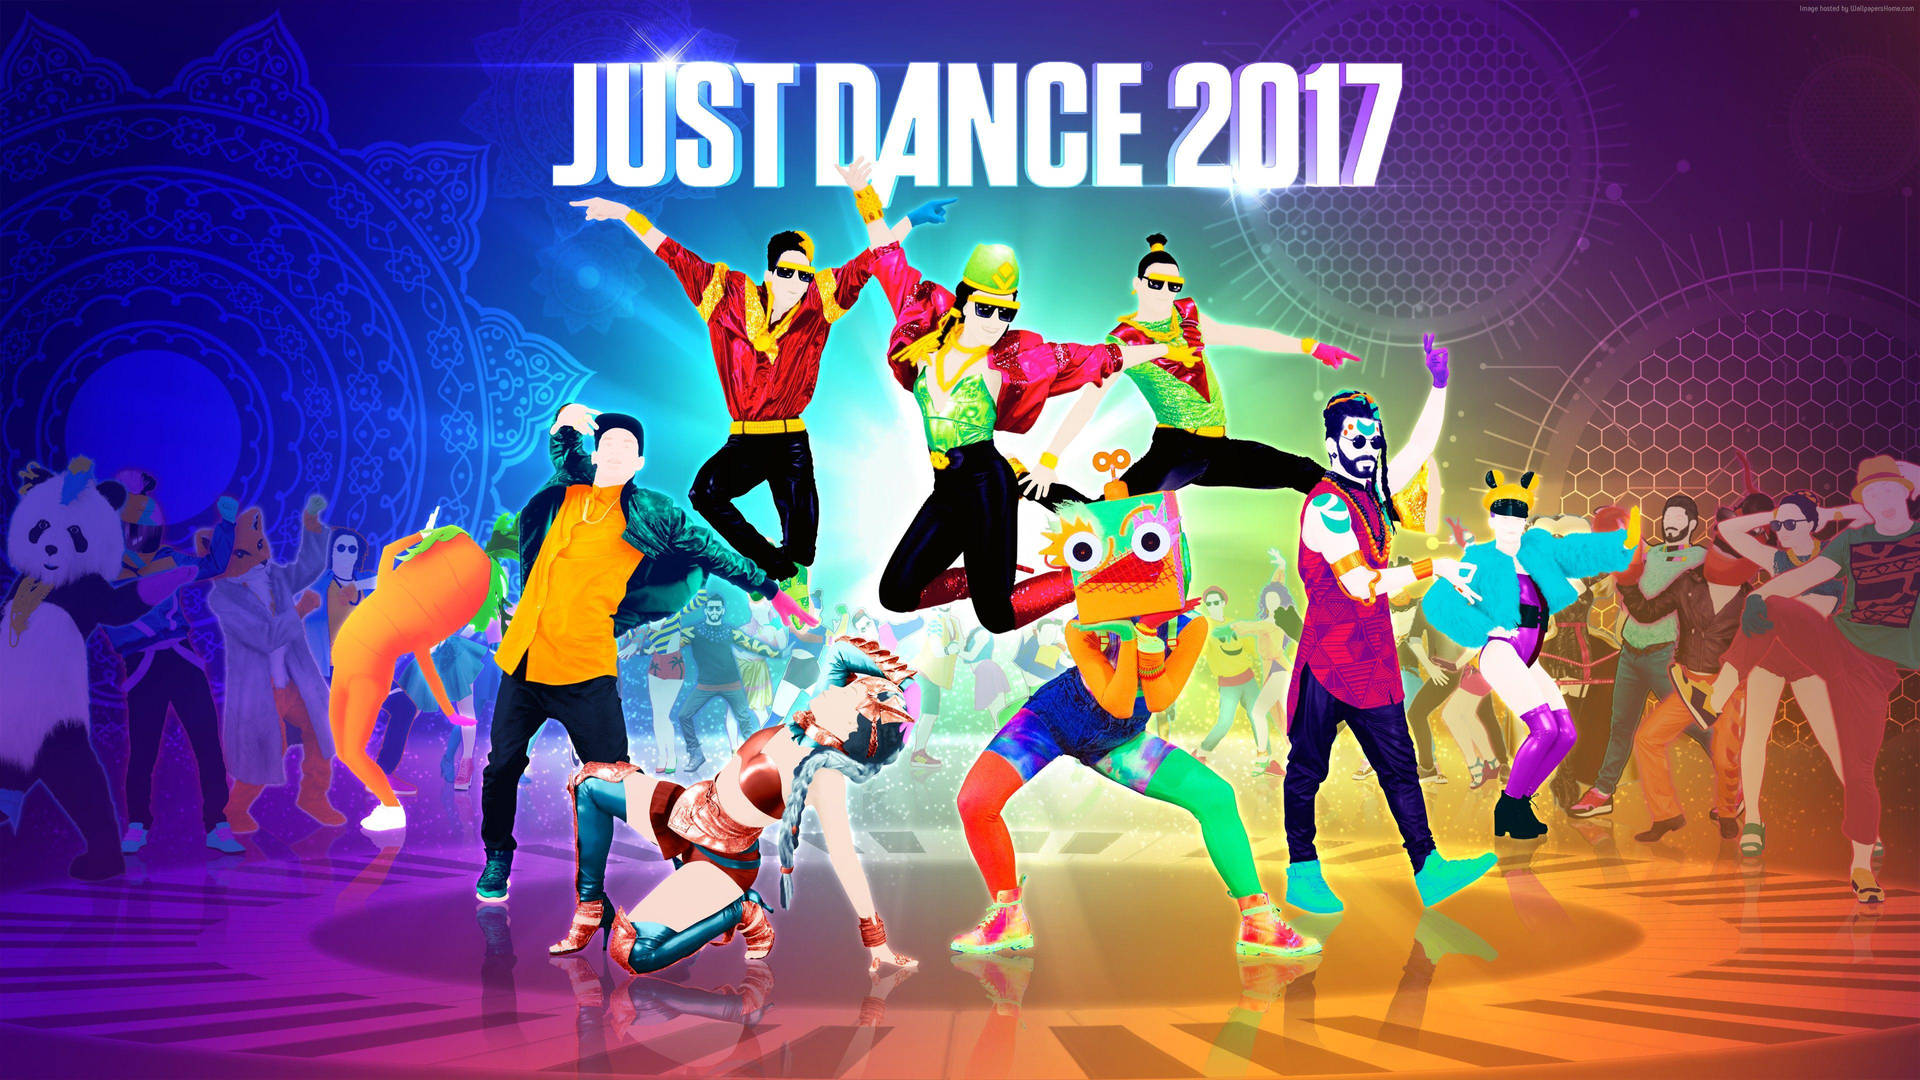 Bailarinesde Just Dance 2017 En El Suelo De Piano. Fondo de pantalla